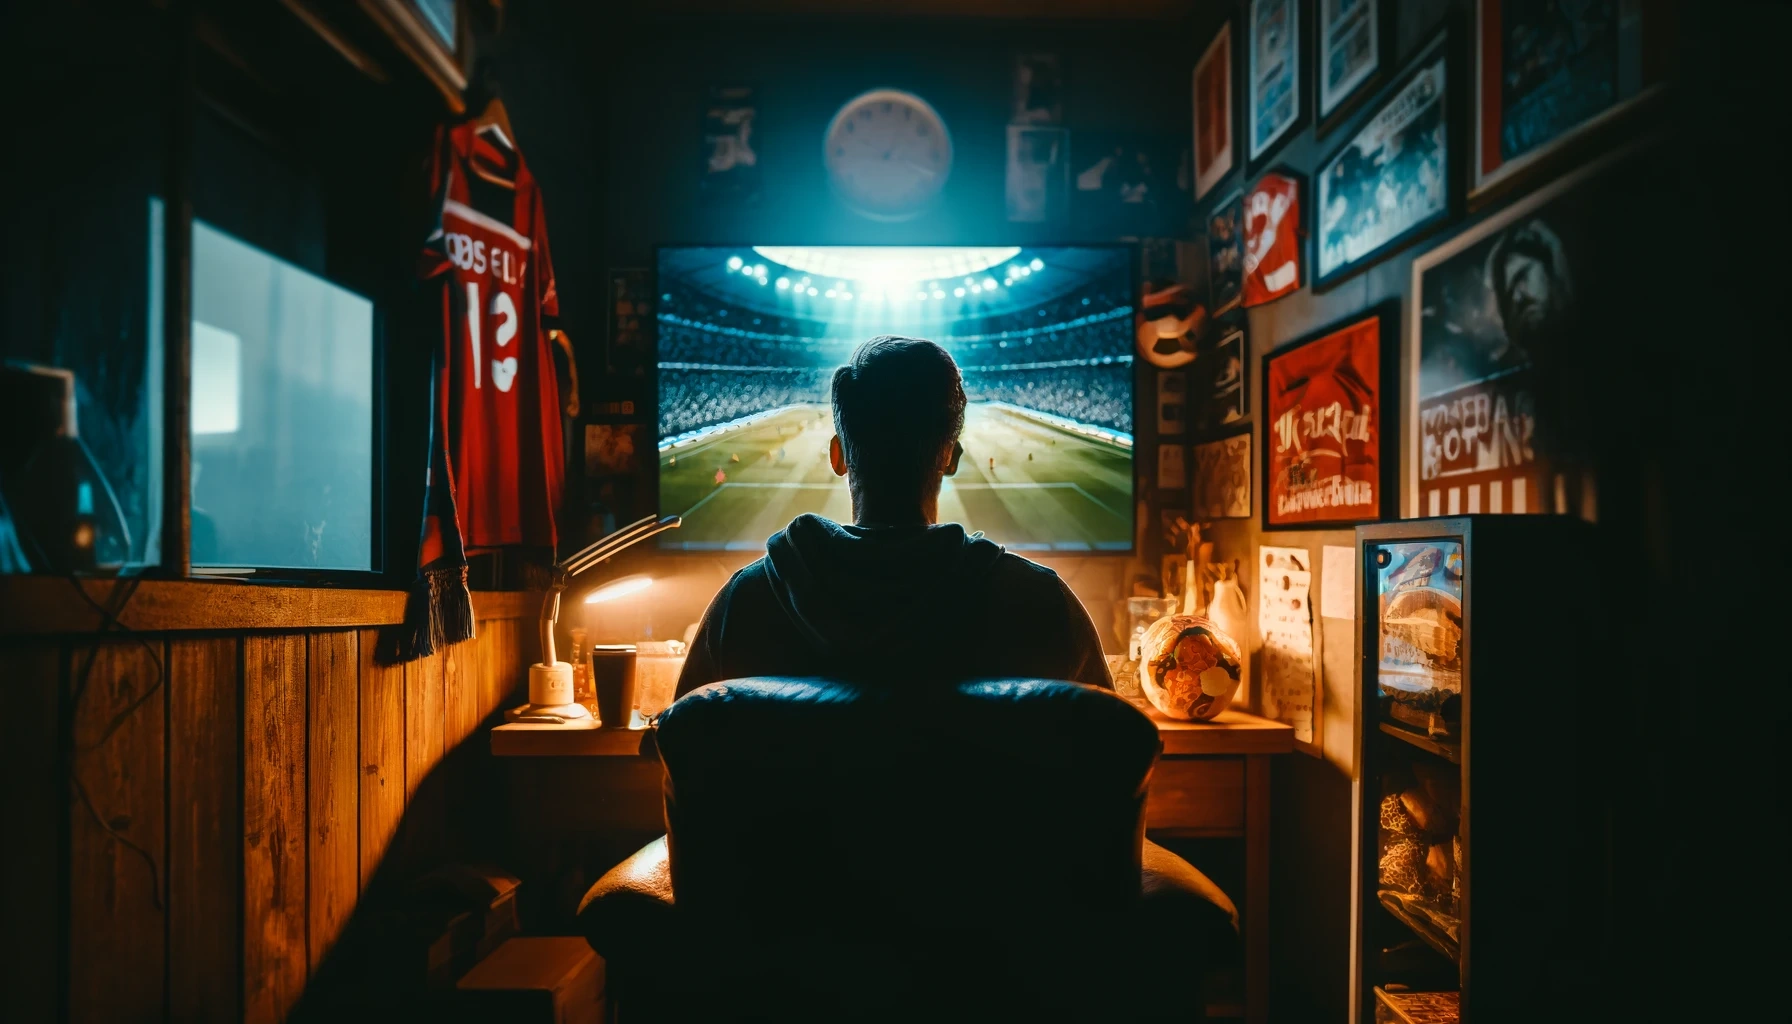 Lär dig enkelt hur du kan titta på fotboll online med din smartphone